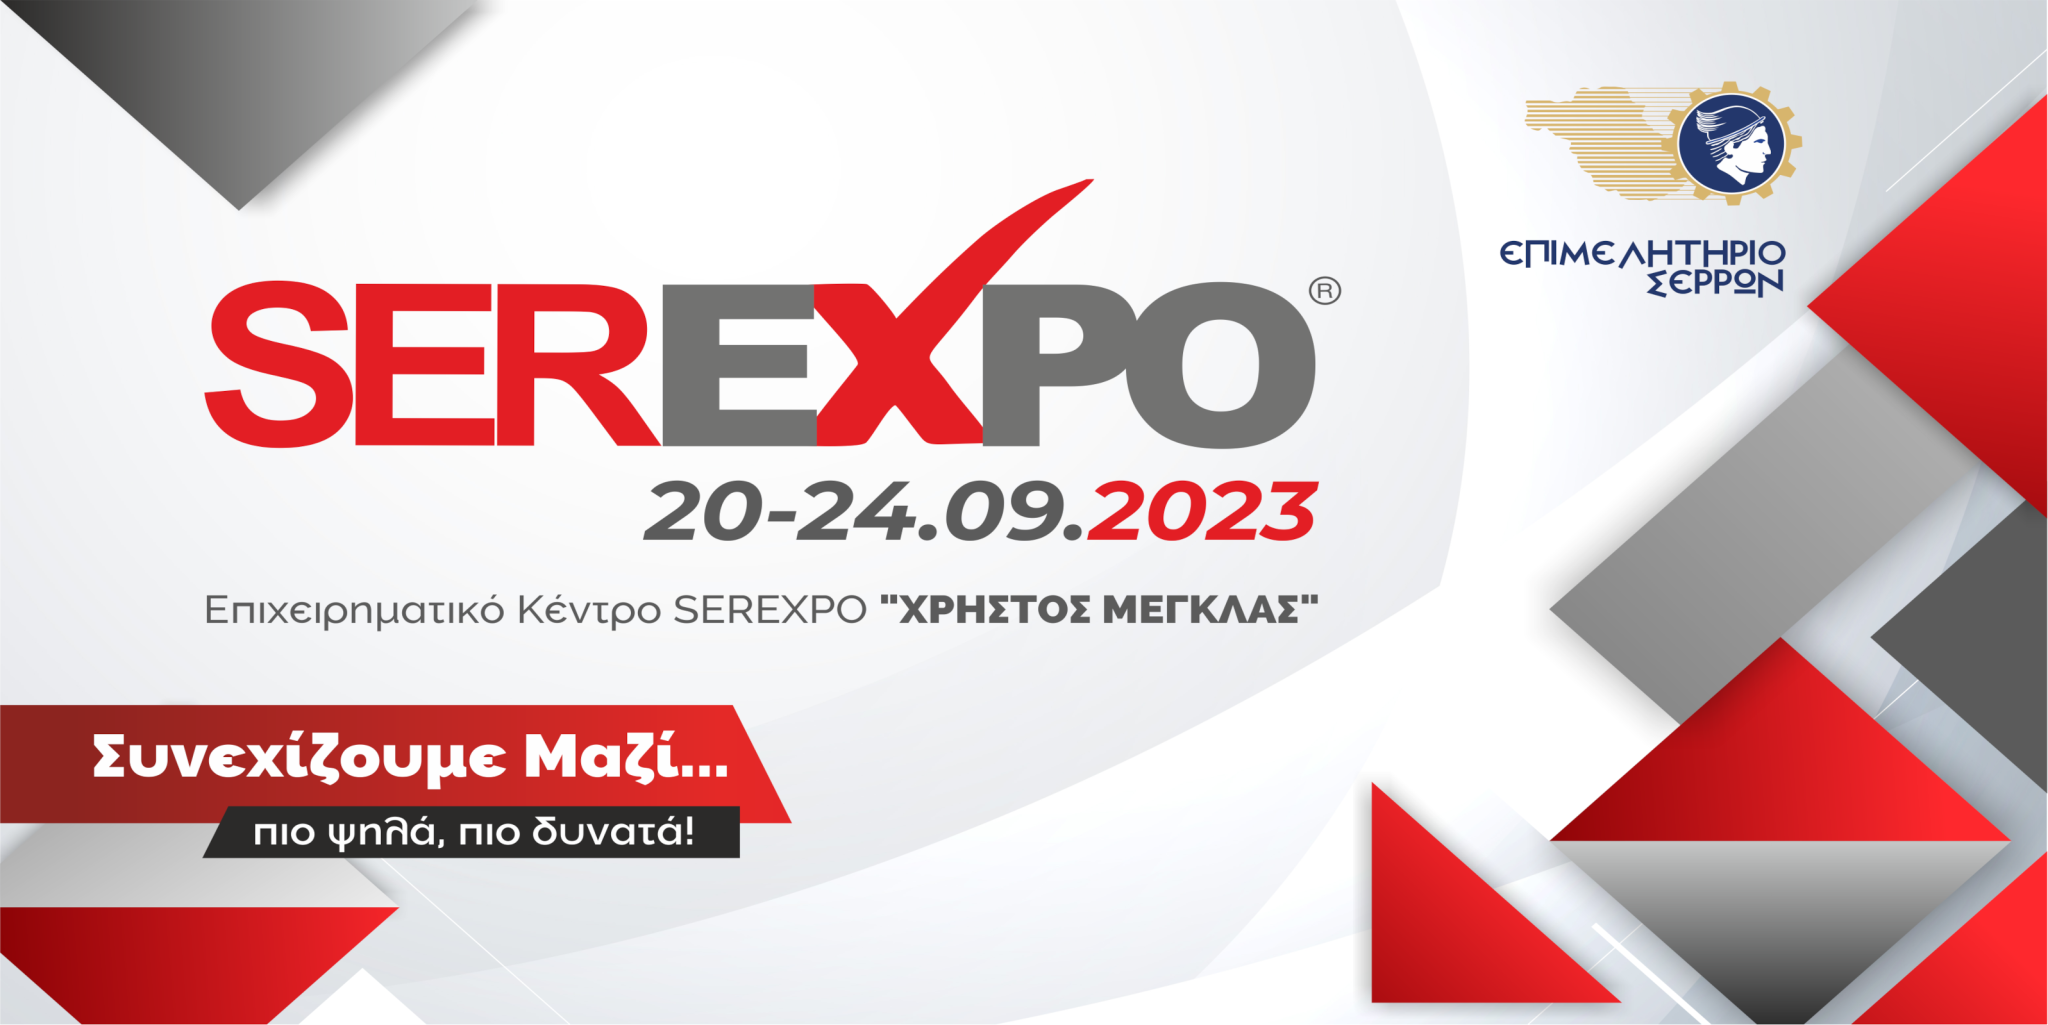 Σέρρες: Έρχεται η έκθεση “Serexpo 2023”-Το πρόγραμμα των παράλληλων εκδηλώσεων